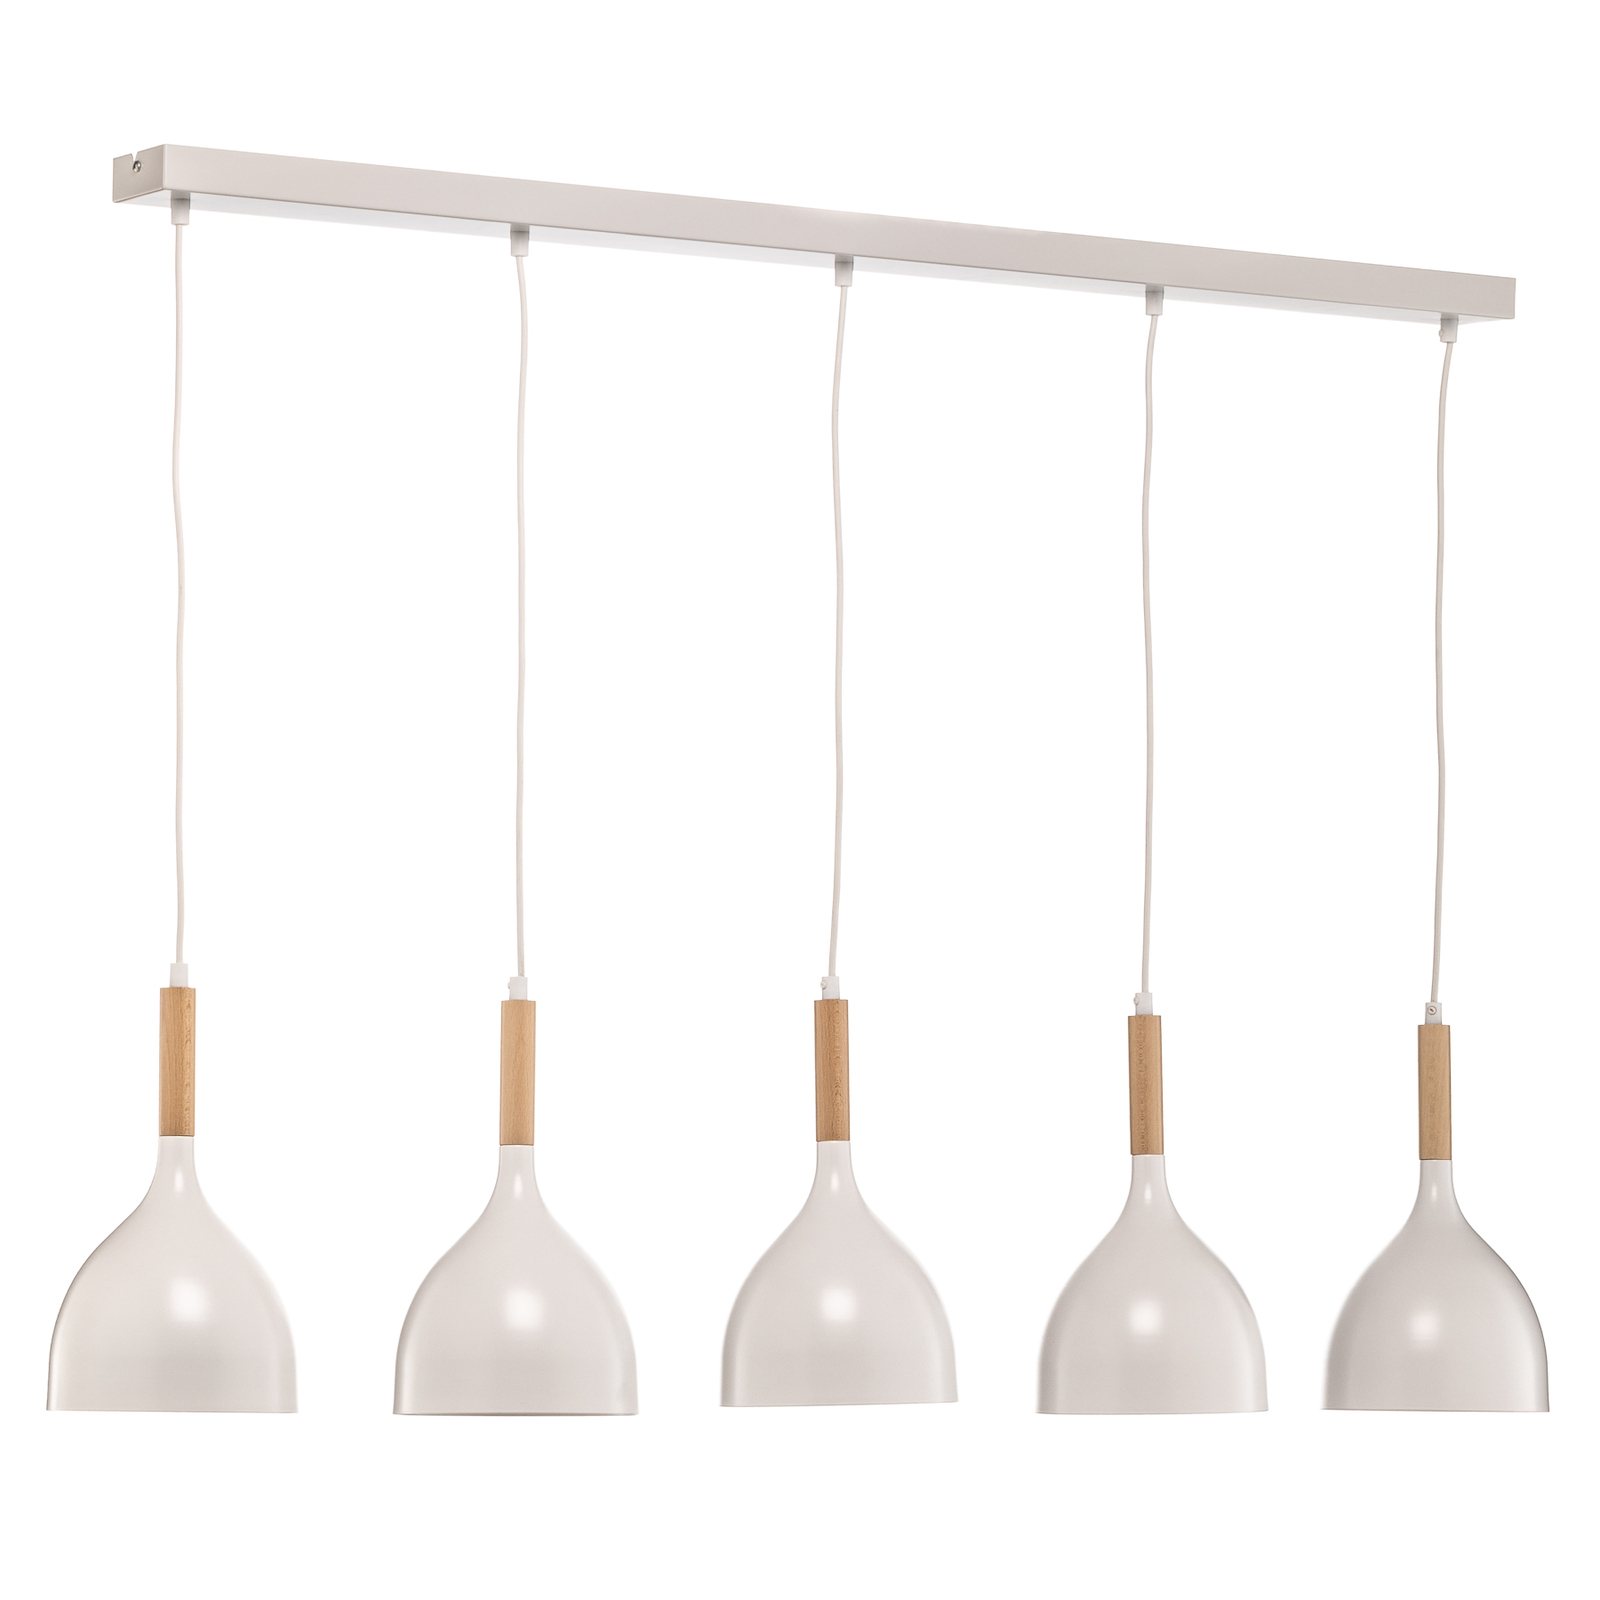 Noak hanglamp 5-lamps lang wit/naturel hout